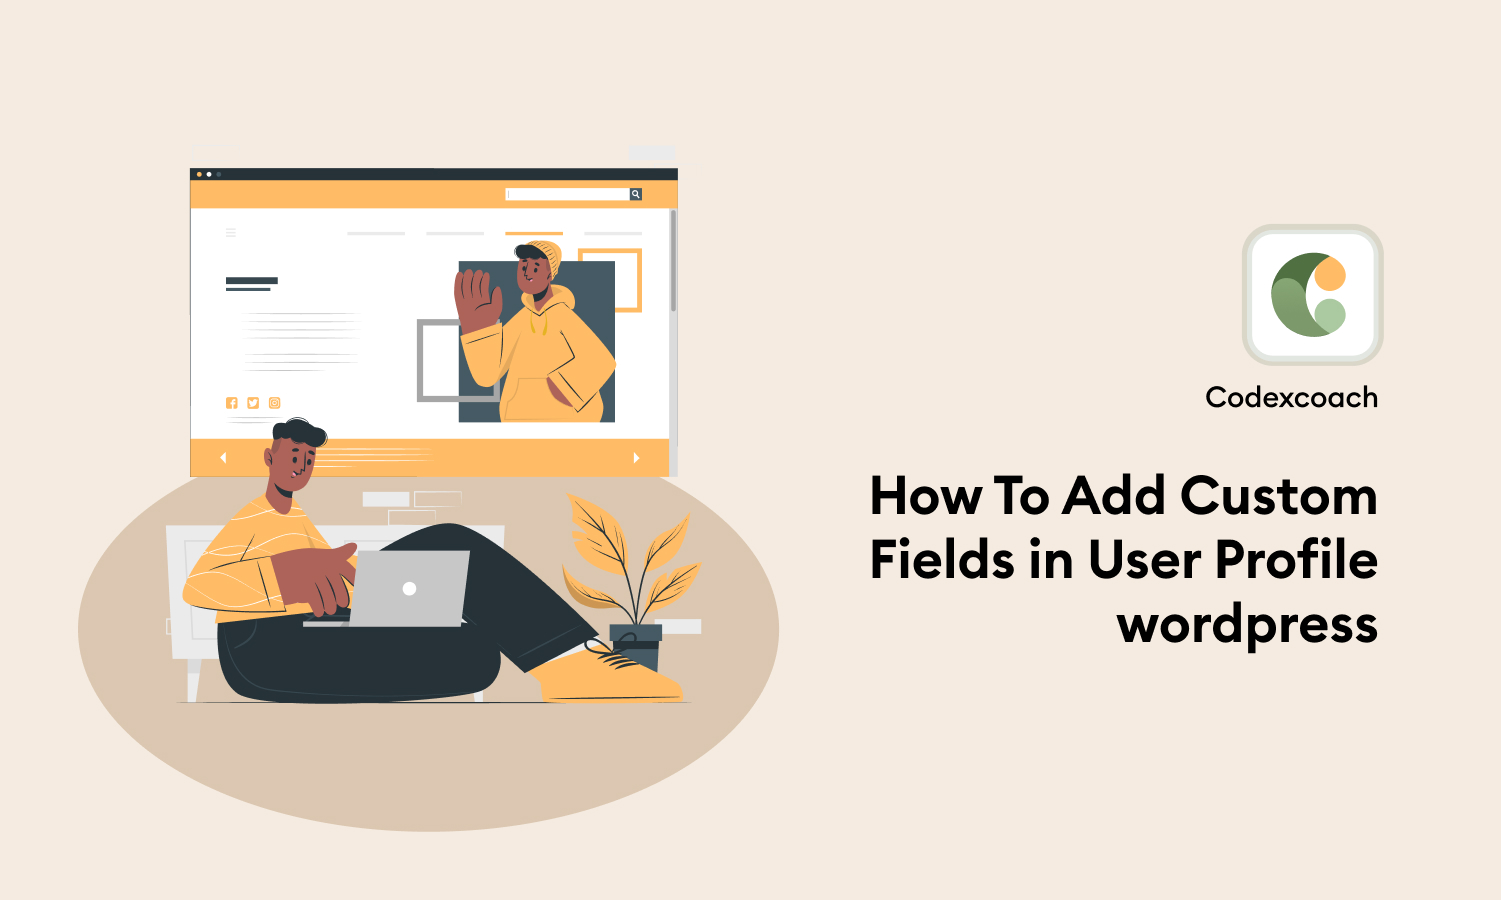 How To Add Custom Fields in User Profile wordpress